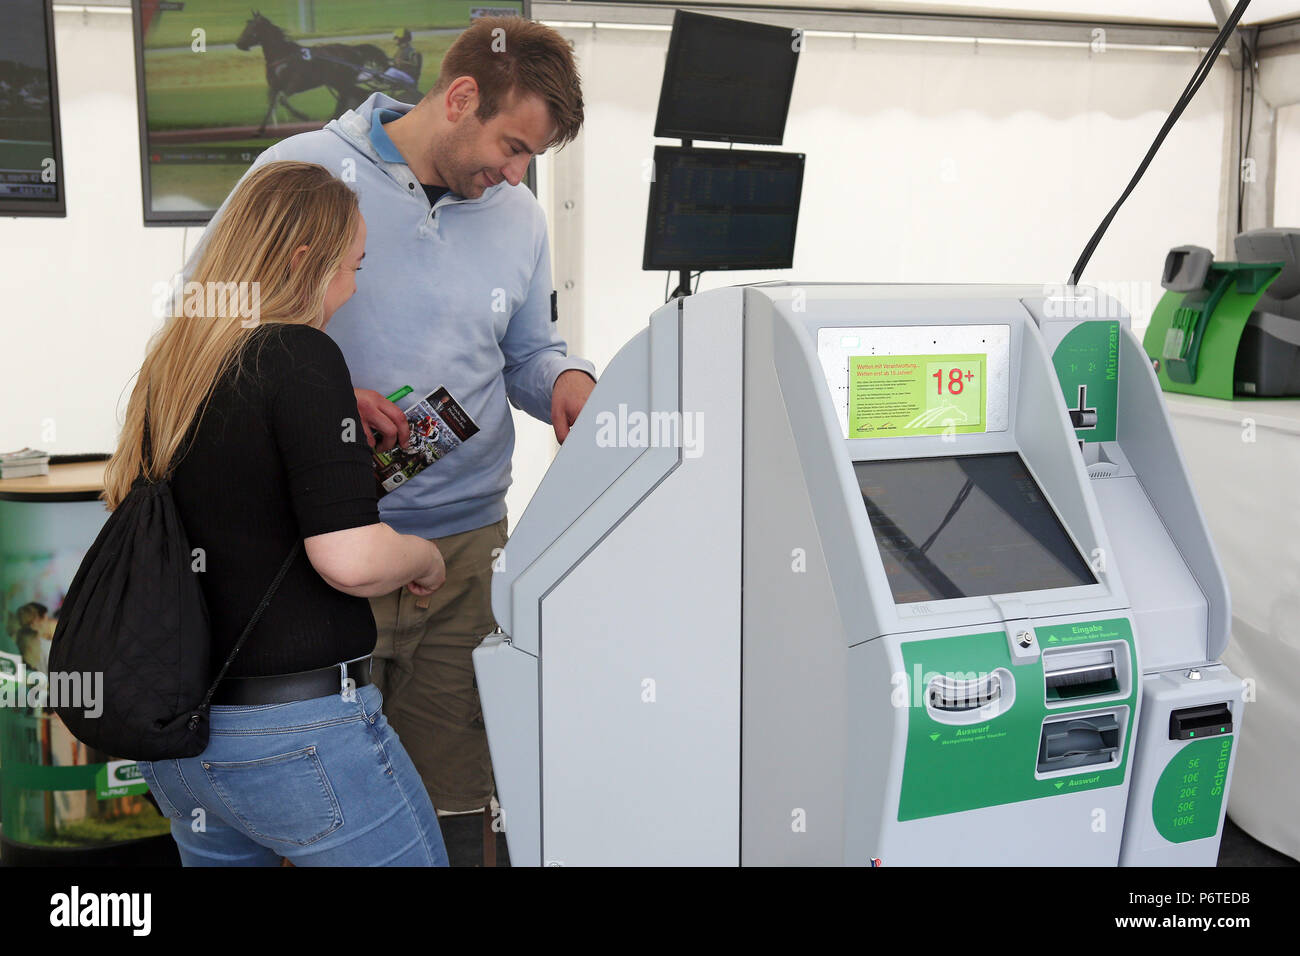 Hambourg, l'homme et la femme sont debout devant une machine à sous Banque D'Images